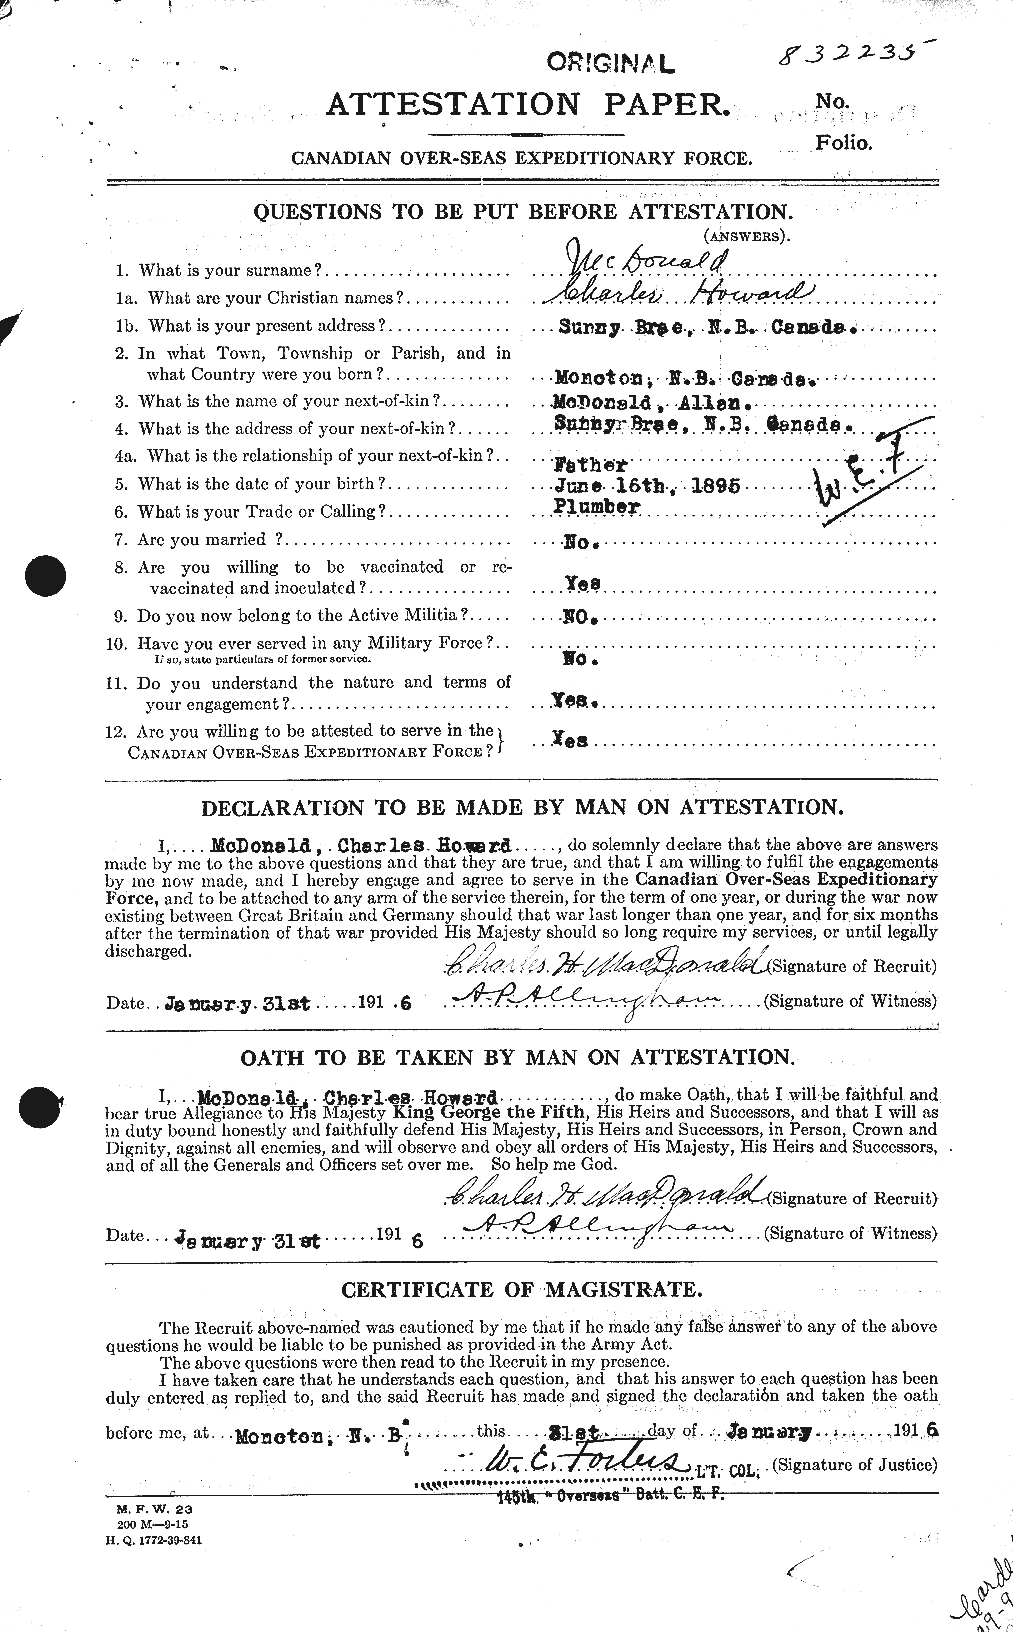 Dossiers du Personnel de la Première Guerre mondiale - CEC 517411a